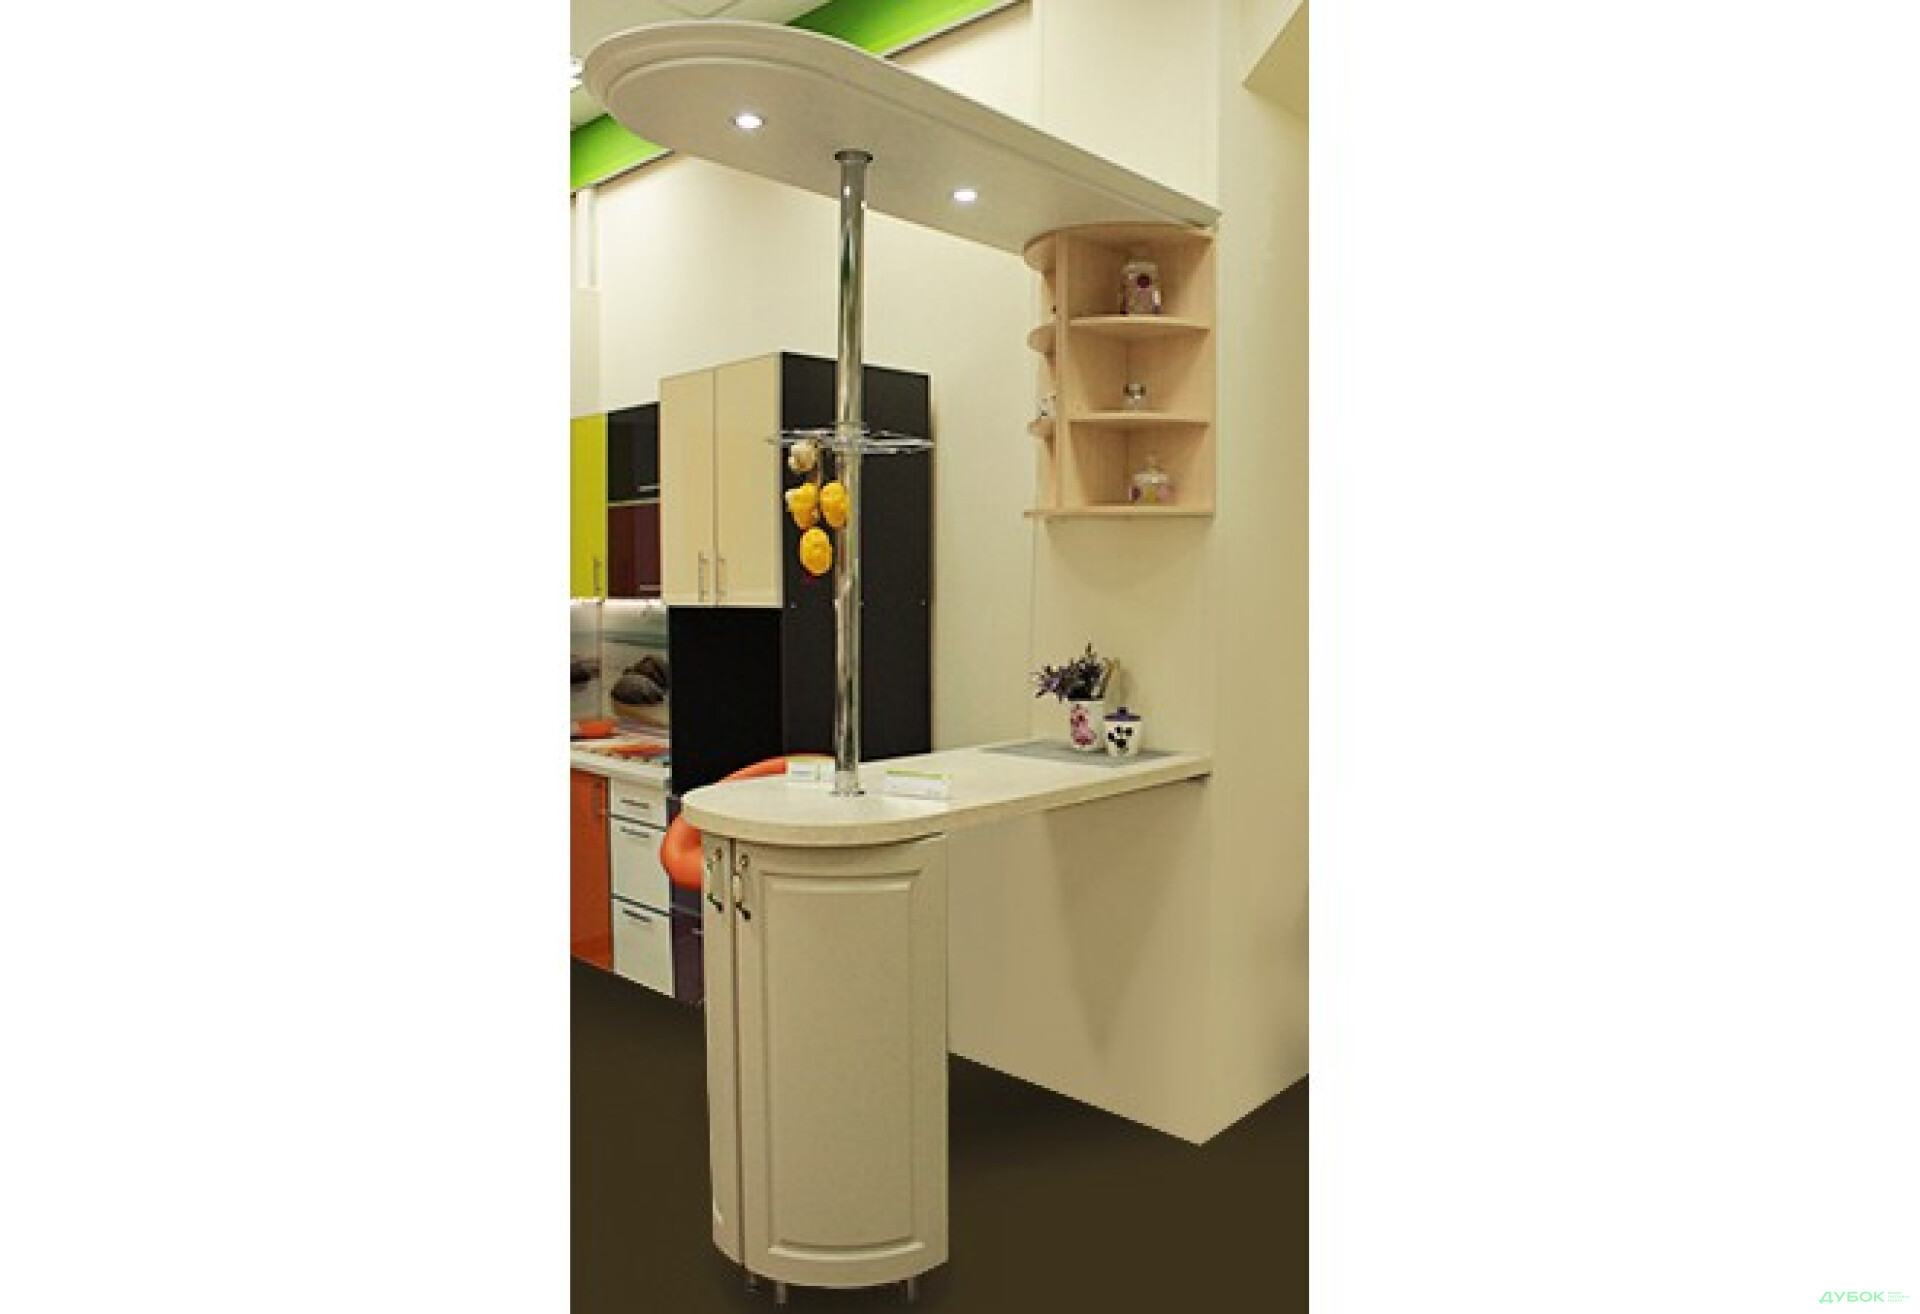 Фото 1 - Кухня Престиж / Prestige SALE Барная стойка 1.4 Выставочная модель Мебель Стар